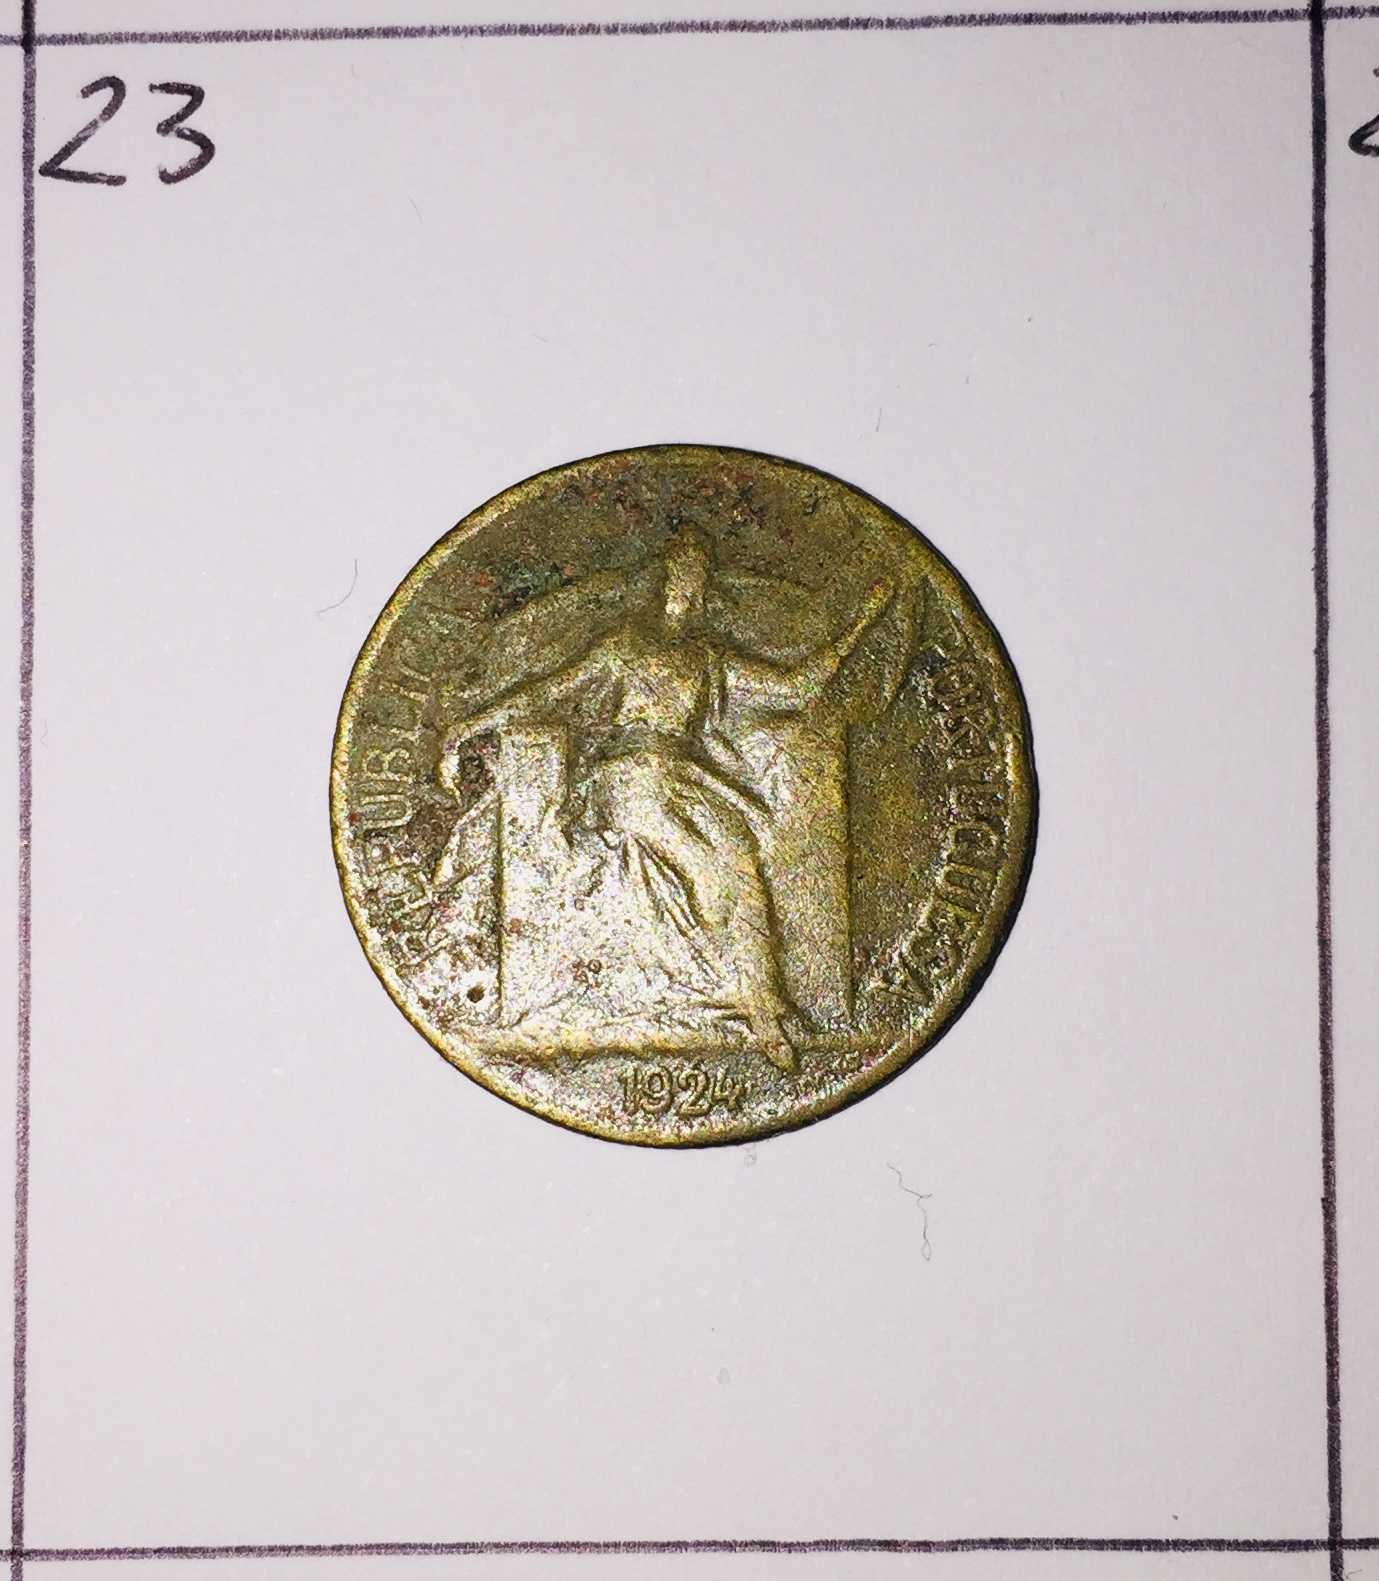 50 centavos de 1924